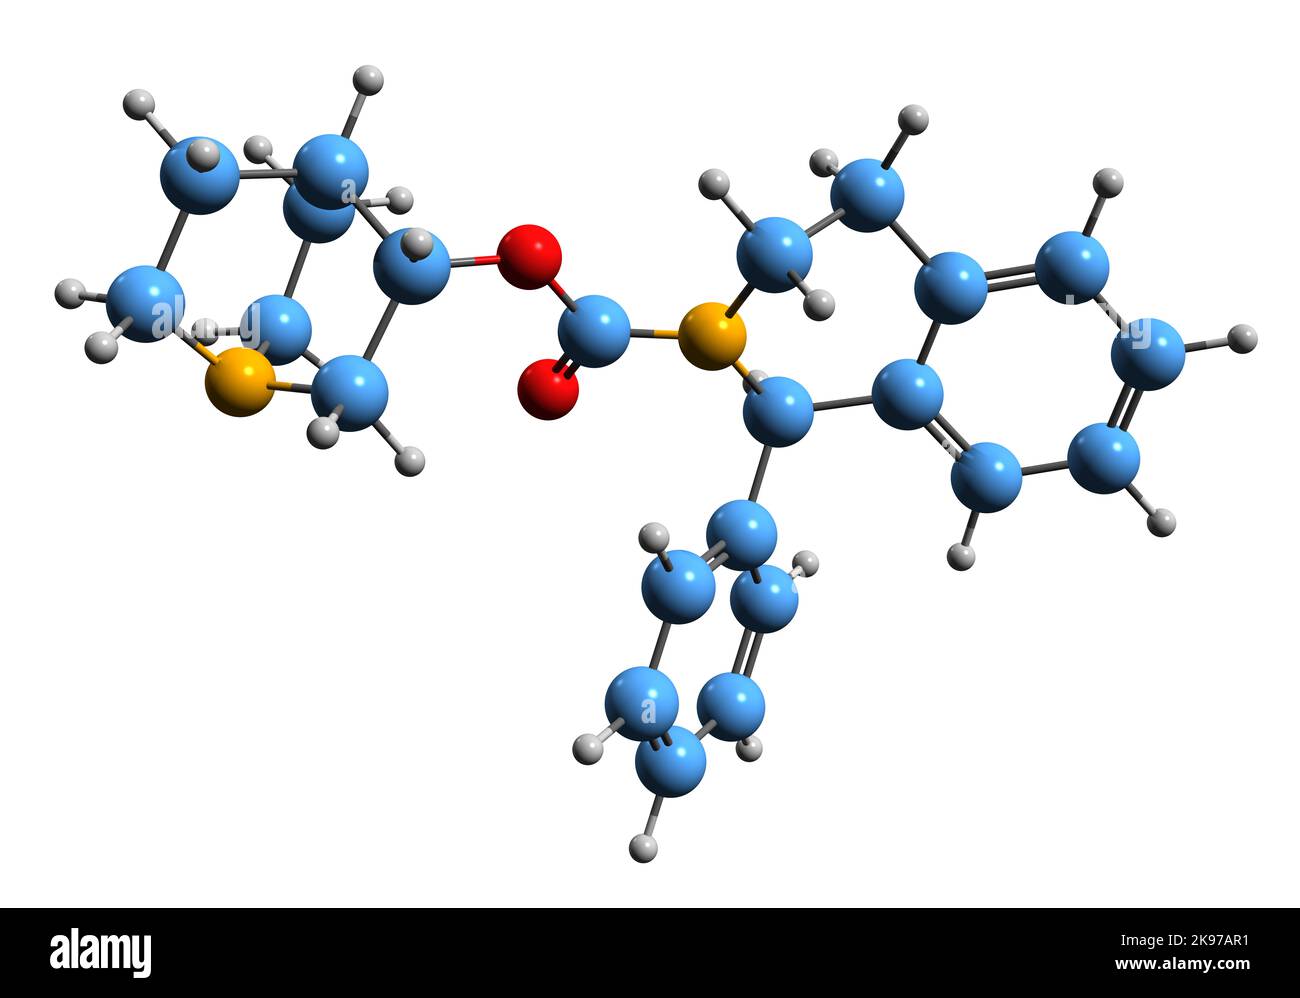 3D Bild der Skelettformel von Solifenacin - molekulare chemische Struktur von überaktiven Blasenmedikamenten isoliert auf weißem Hintergrund Stockfoto